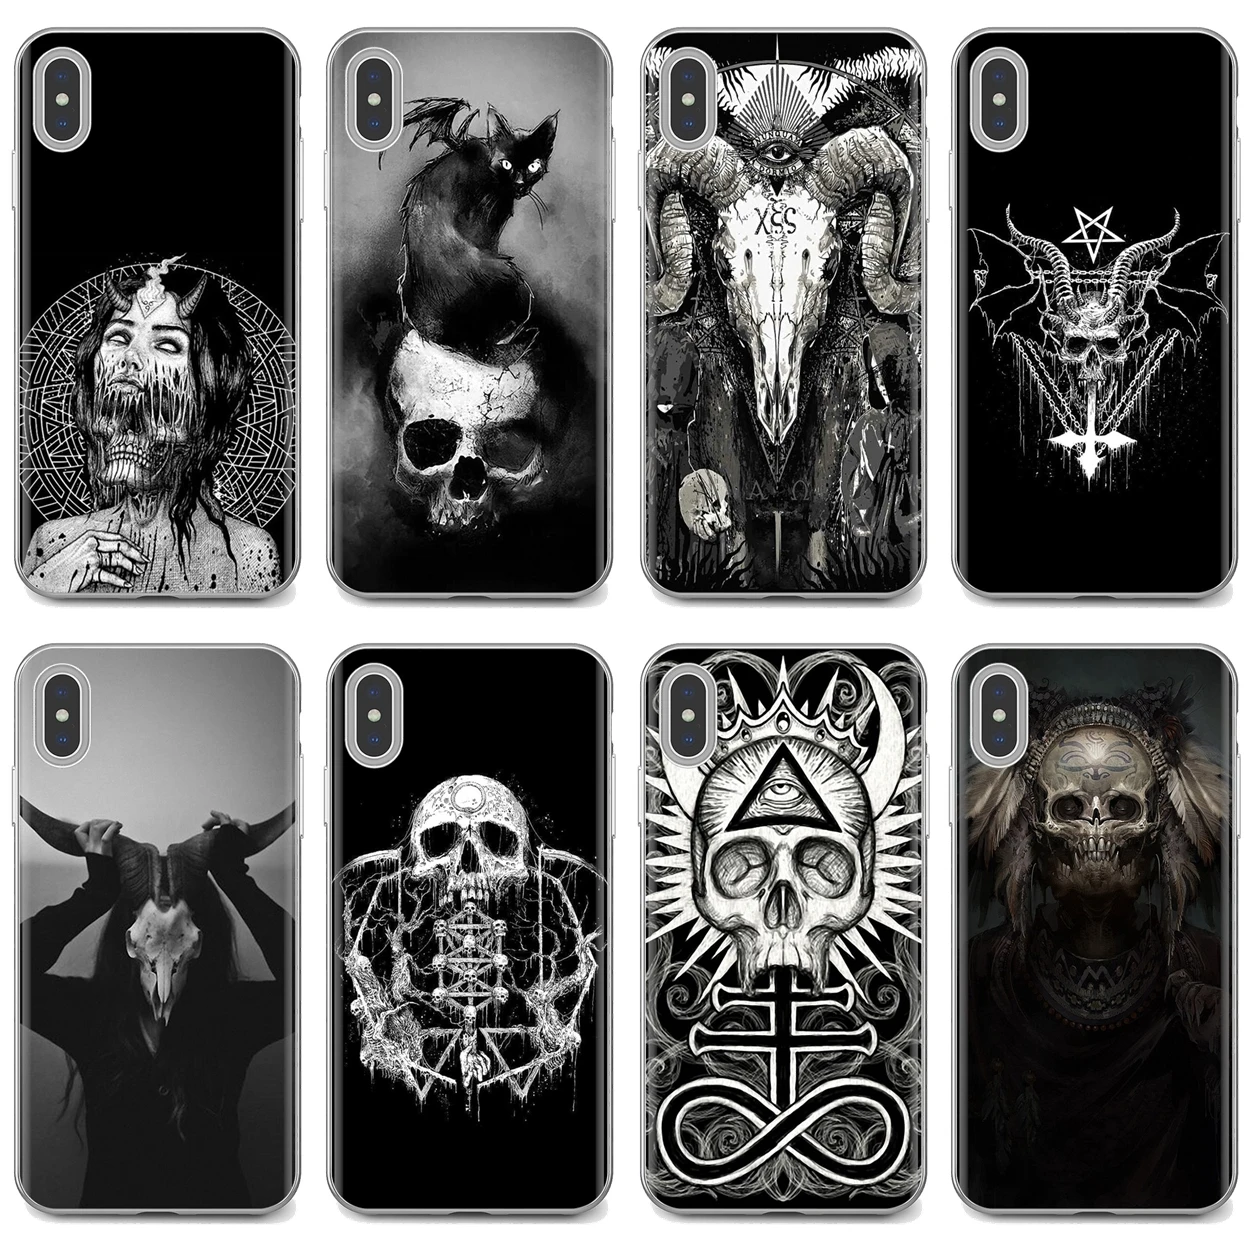 

For iPhone 10 11 12 13 Mini Pro 4S 5S SE 5C 6 6S 7 8 X XR XS Plus Max 2020 Satanic Skull terror design Soft TPU Silicone Case